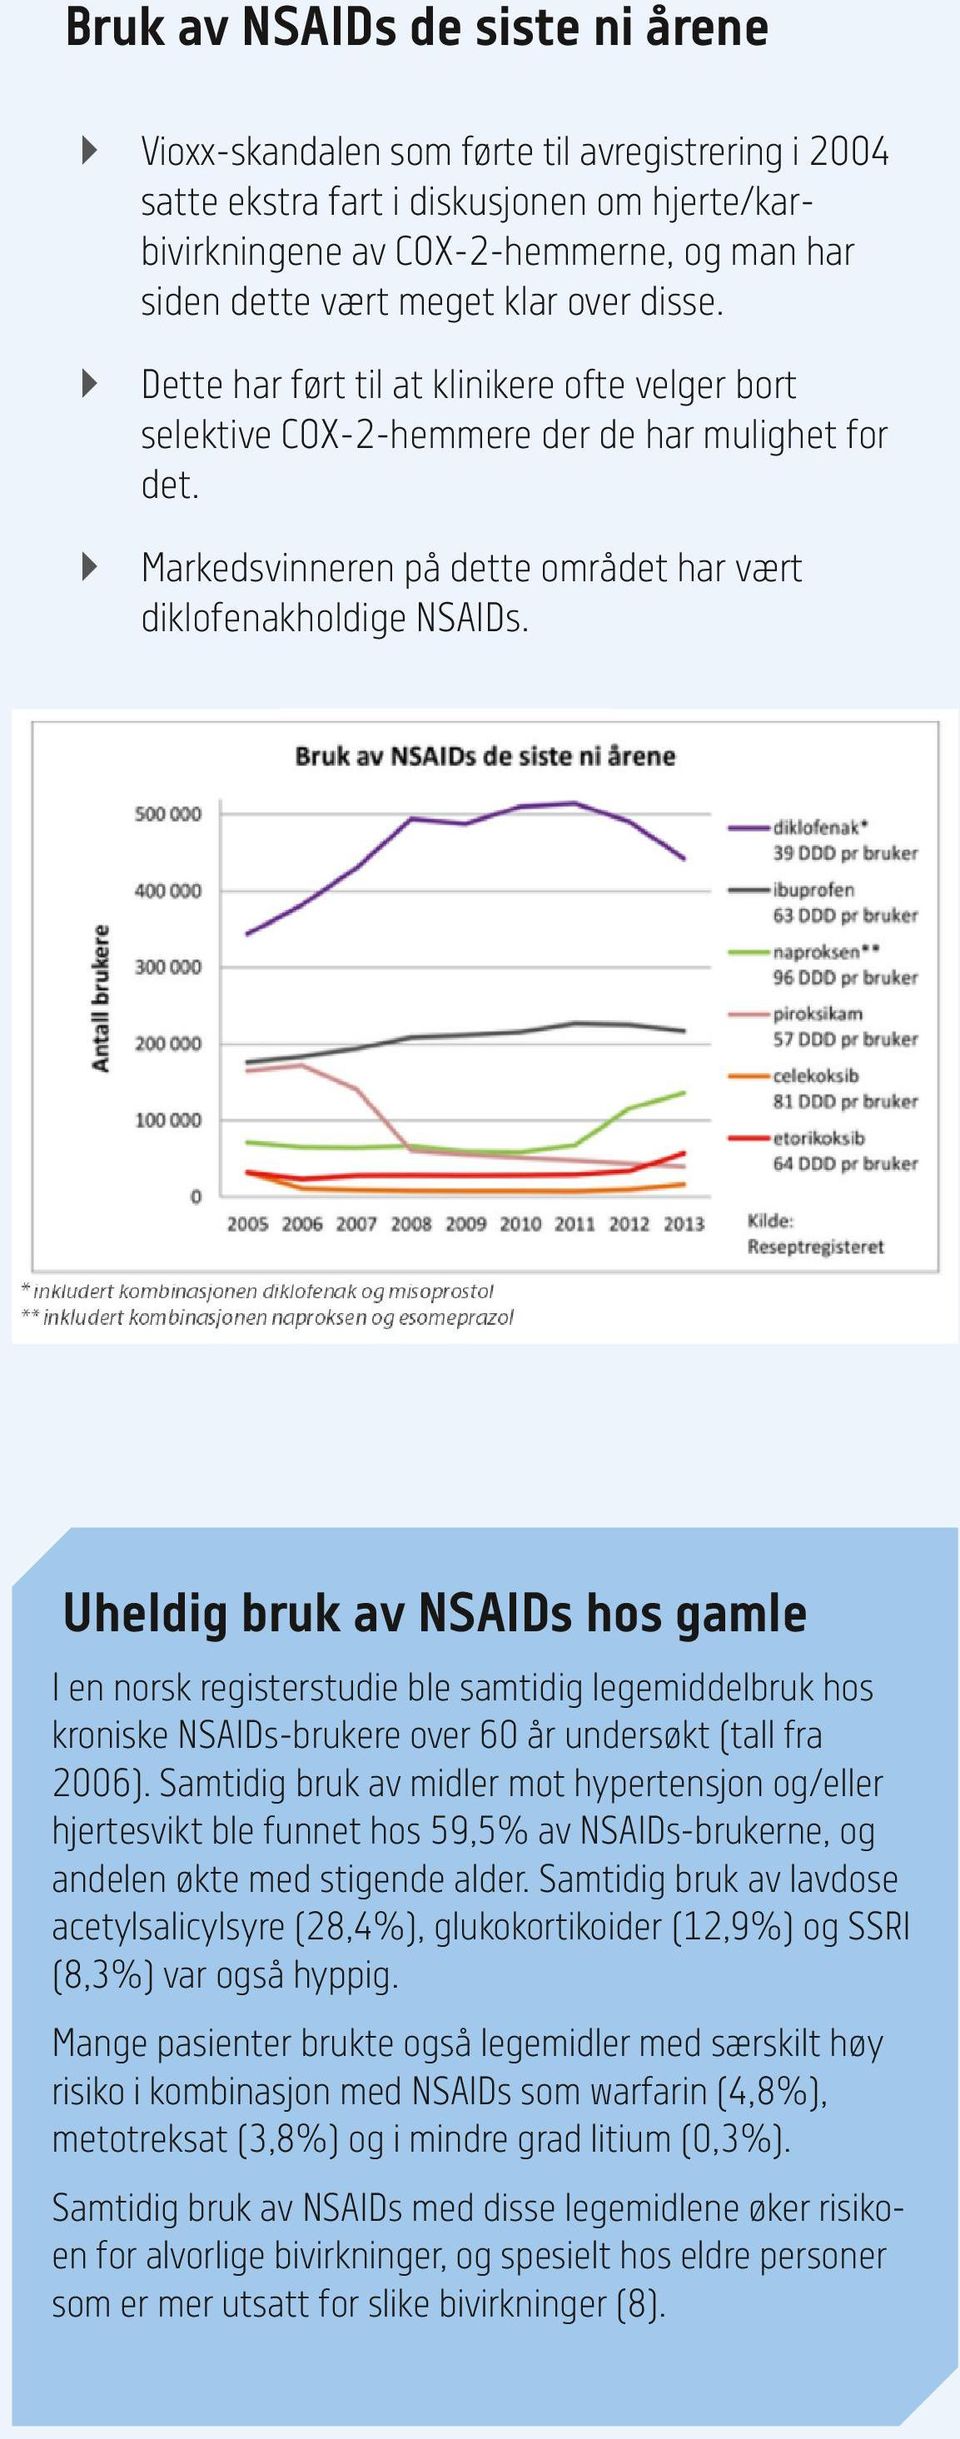 Uheldig bruk av NSAIDs hos gamle I en norsk registerstudie ble samtidig legemiddelbruk hos kroniske NSAIDs-brukere over 60 år undersøkt (tall fra 2006).